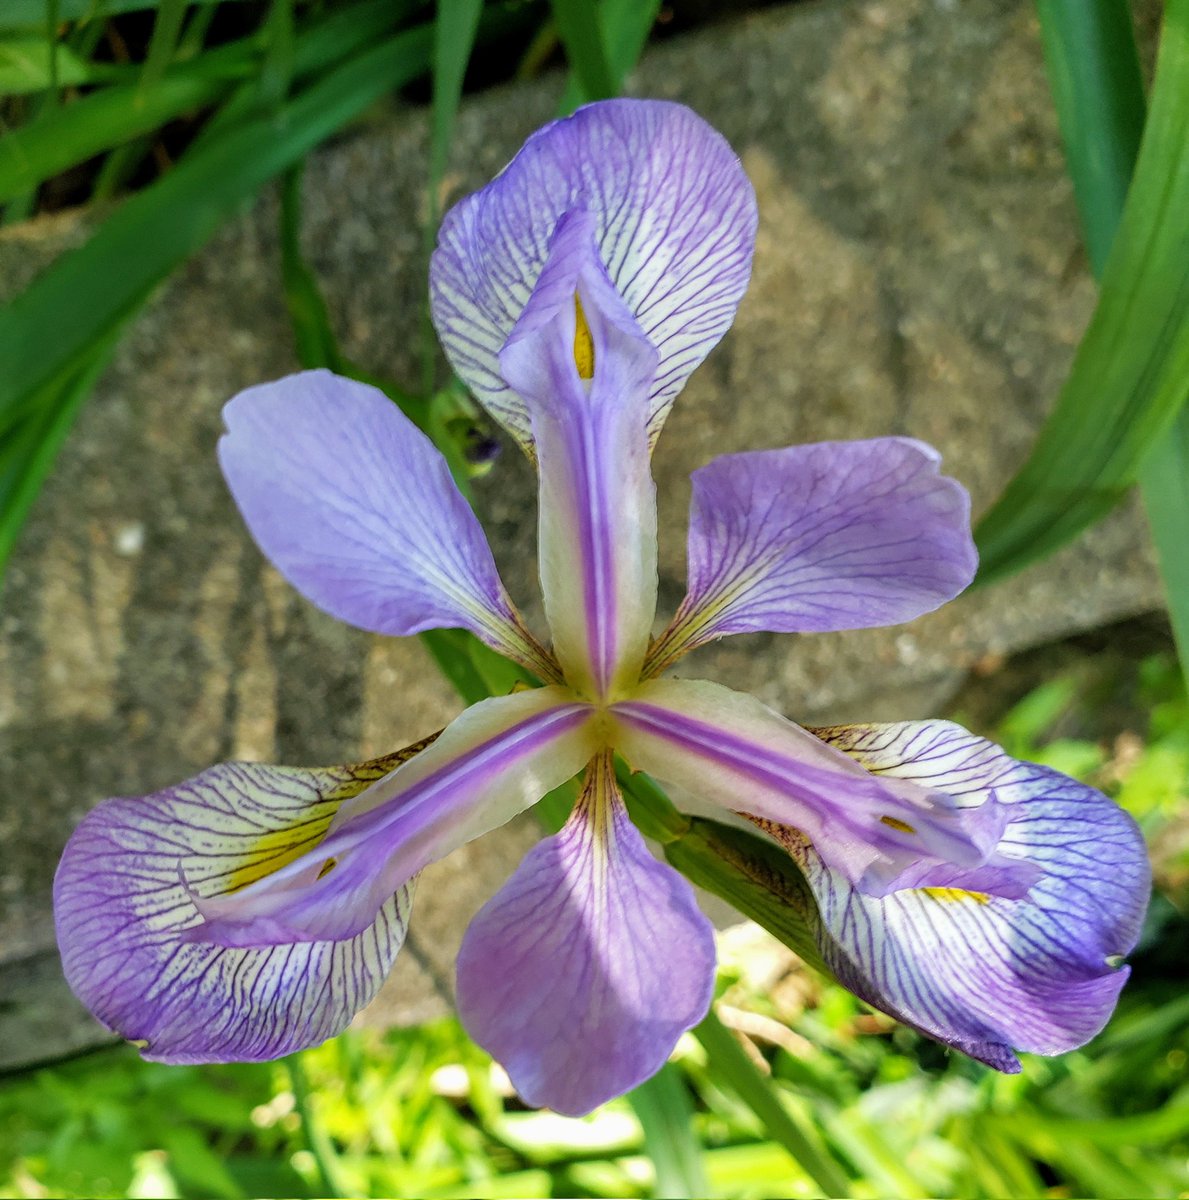 Iris in my garden.